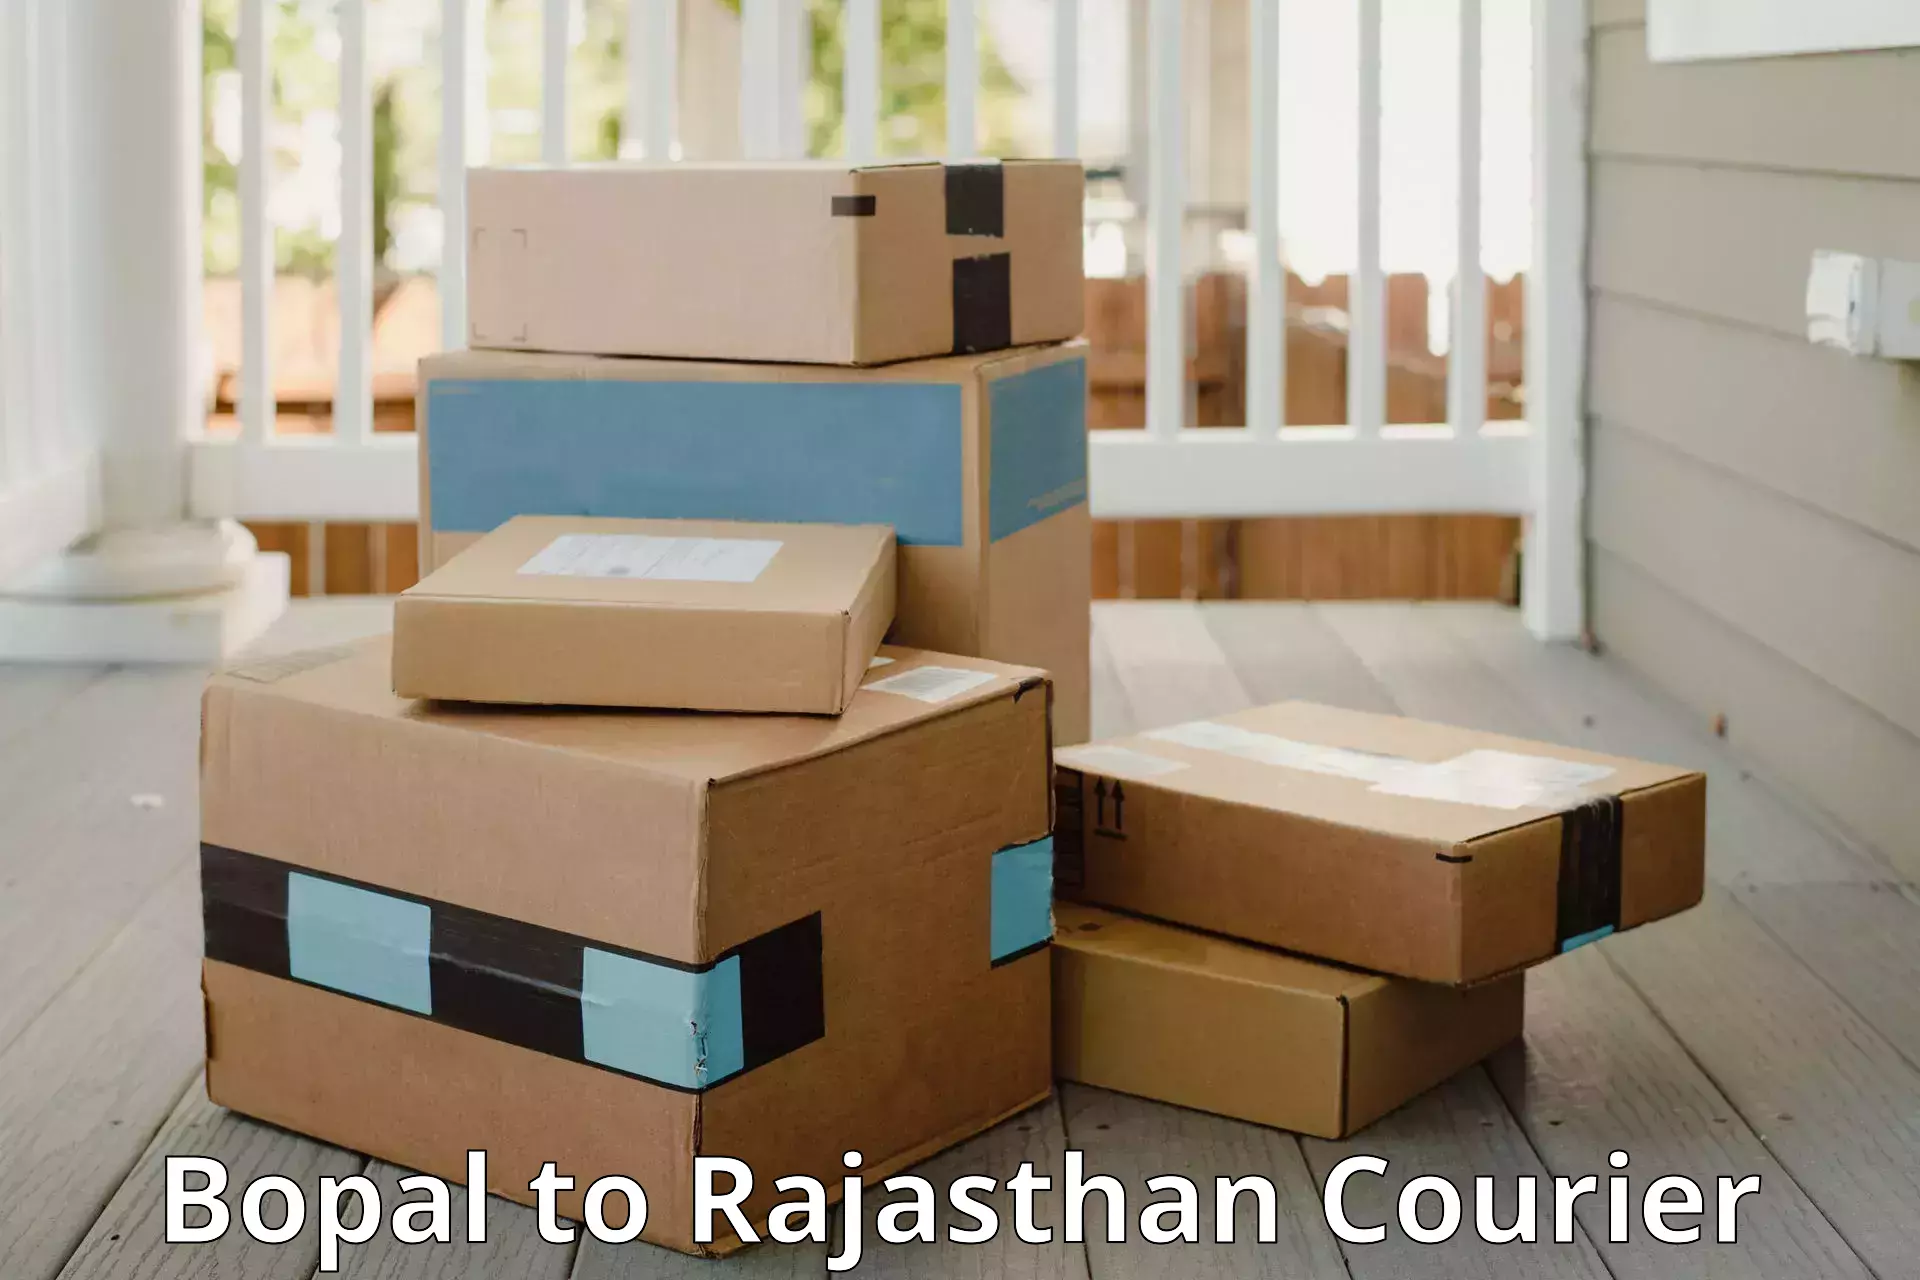 Luggage shipment specialists Bopal to Jaisalmer